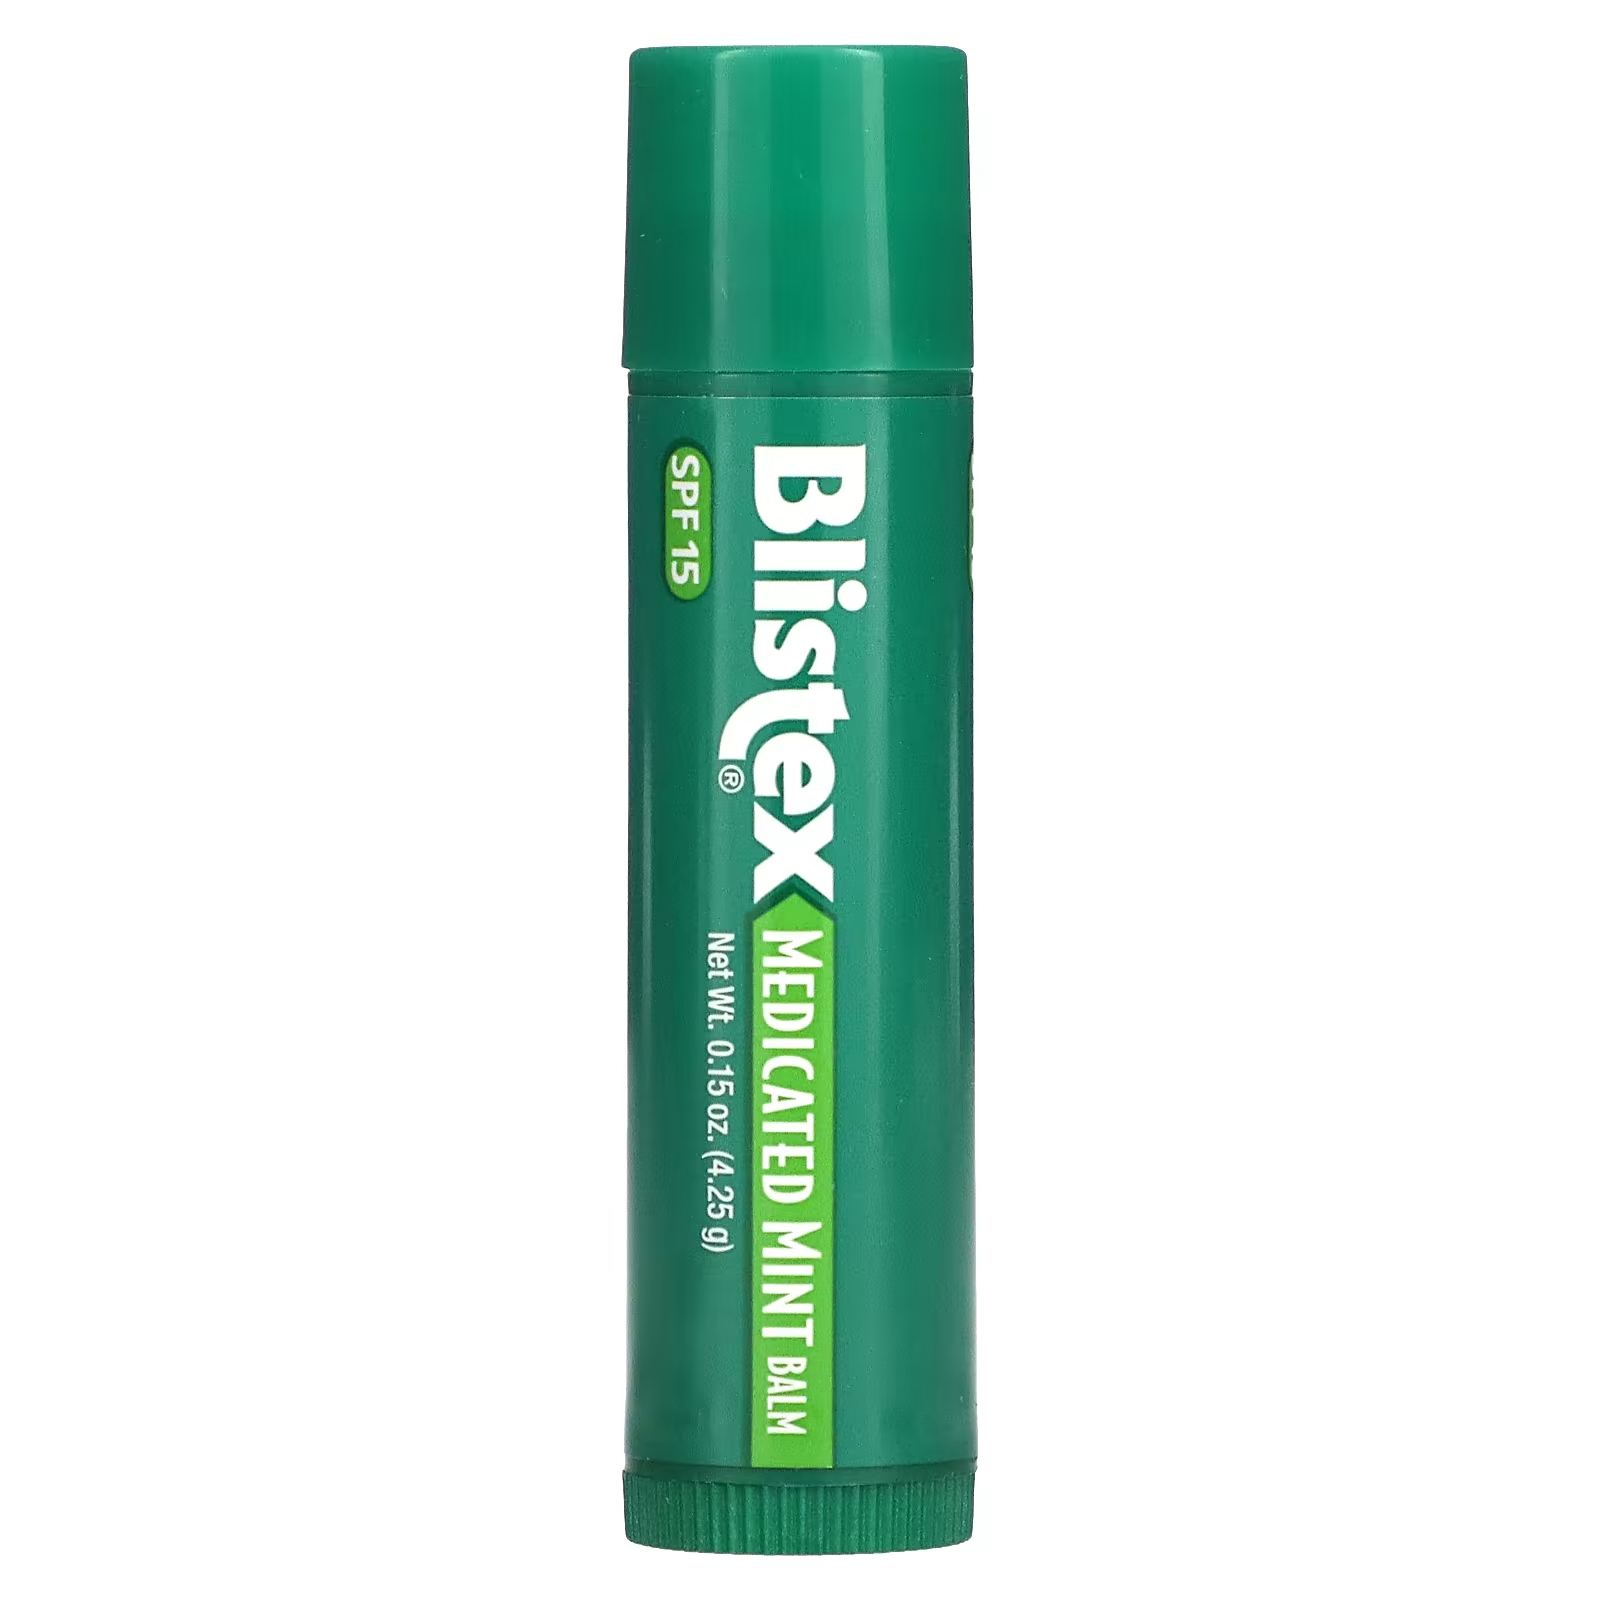 Blistex Лекарственное средство для защиты губ/солнцезащитное средство SPF 15, мятное, 0,15 унции (4,25 г) blistex лекарственное средство для защиты губ солнцезащитное средство spf 15 berry 0 15 унции 4 25 г